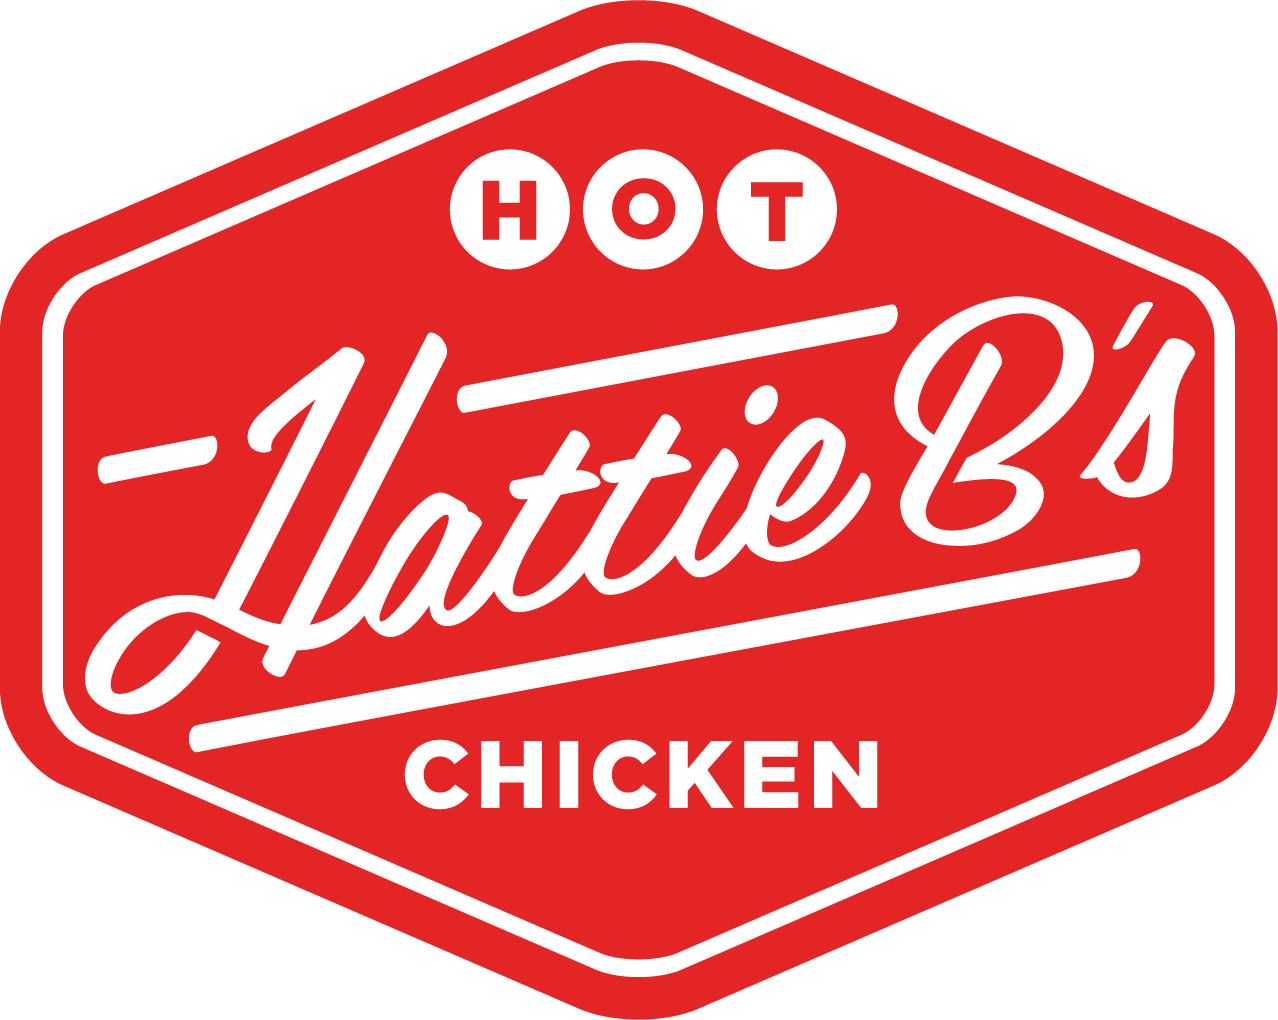 Hattie B's Chicken